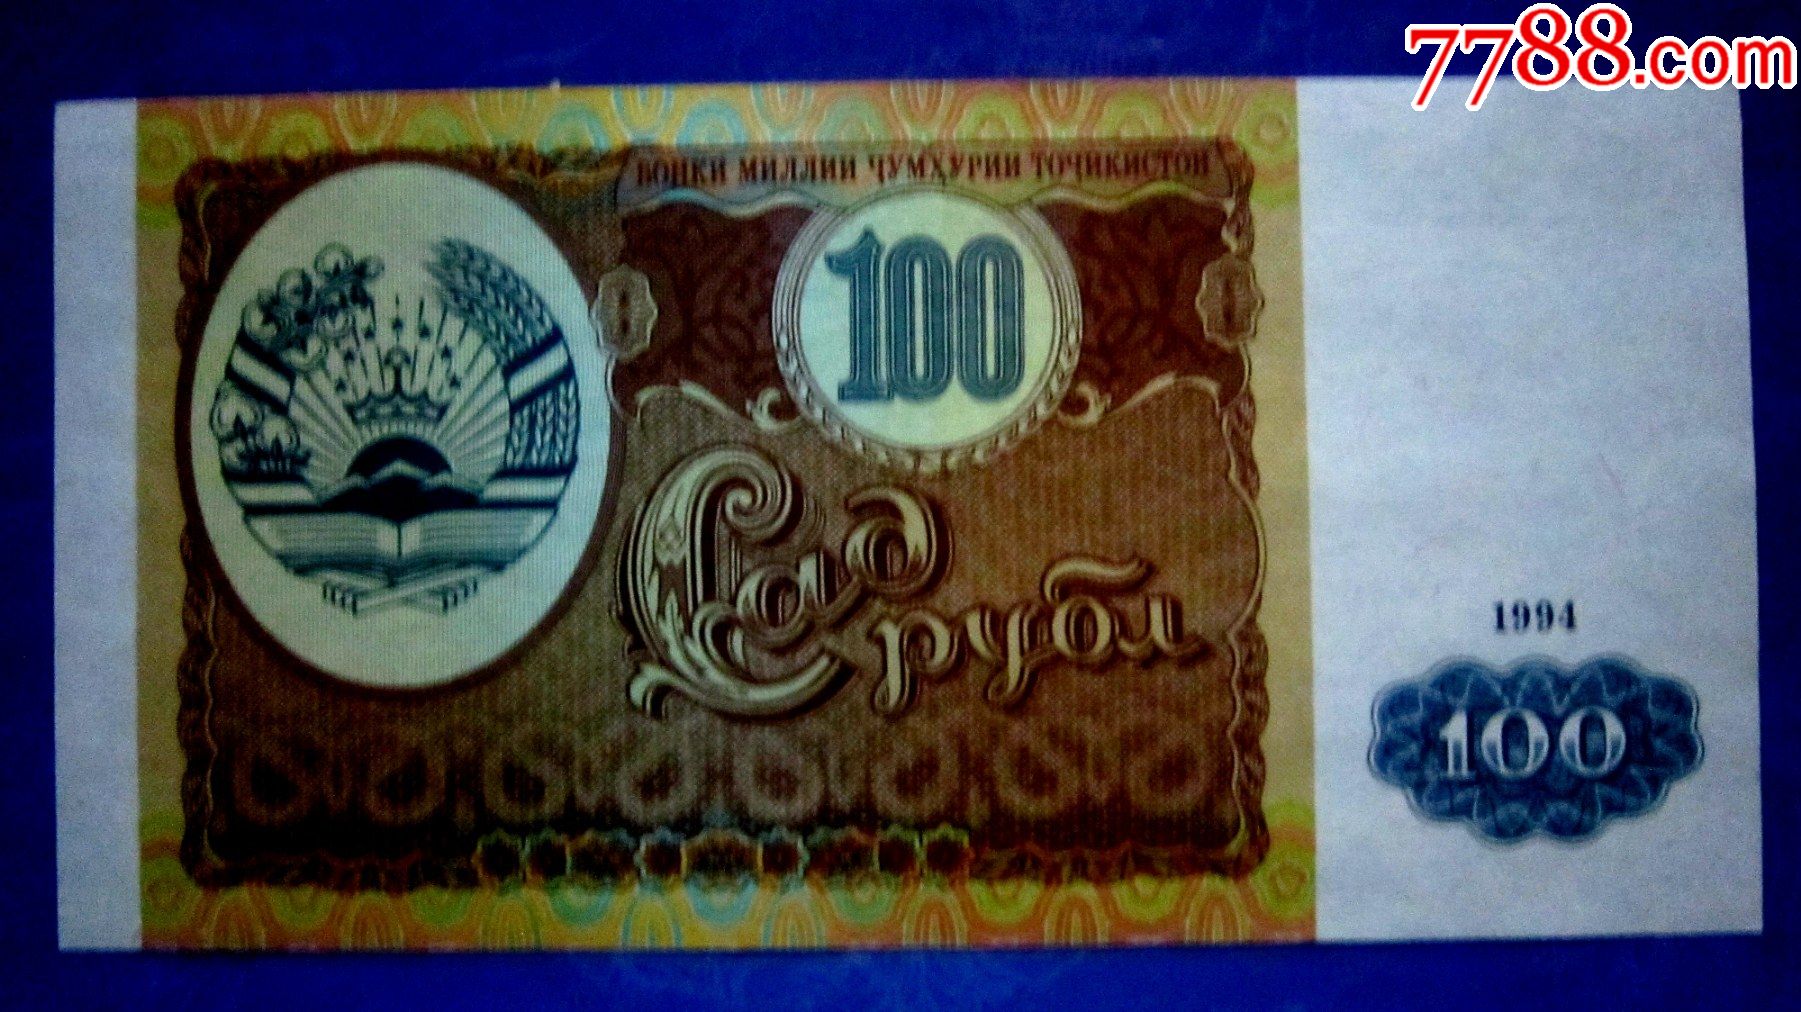 包真精美外钞塔吉克斯坦1994年100卢布水印荧光防伪